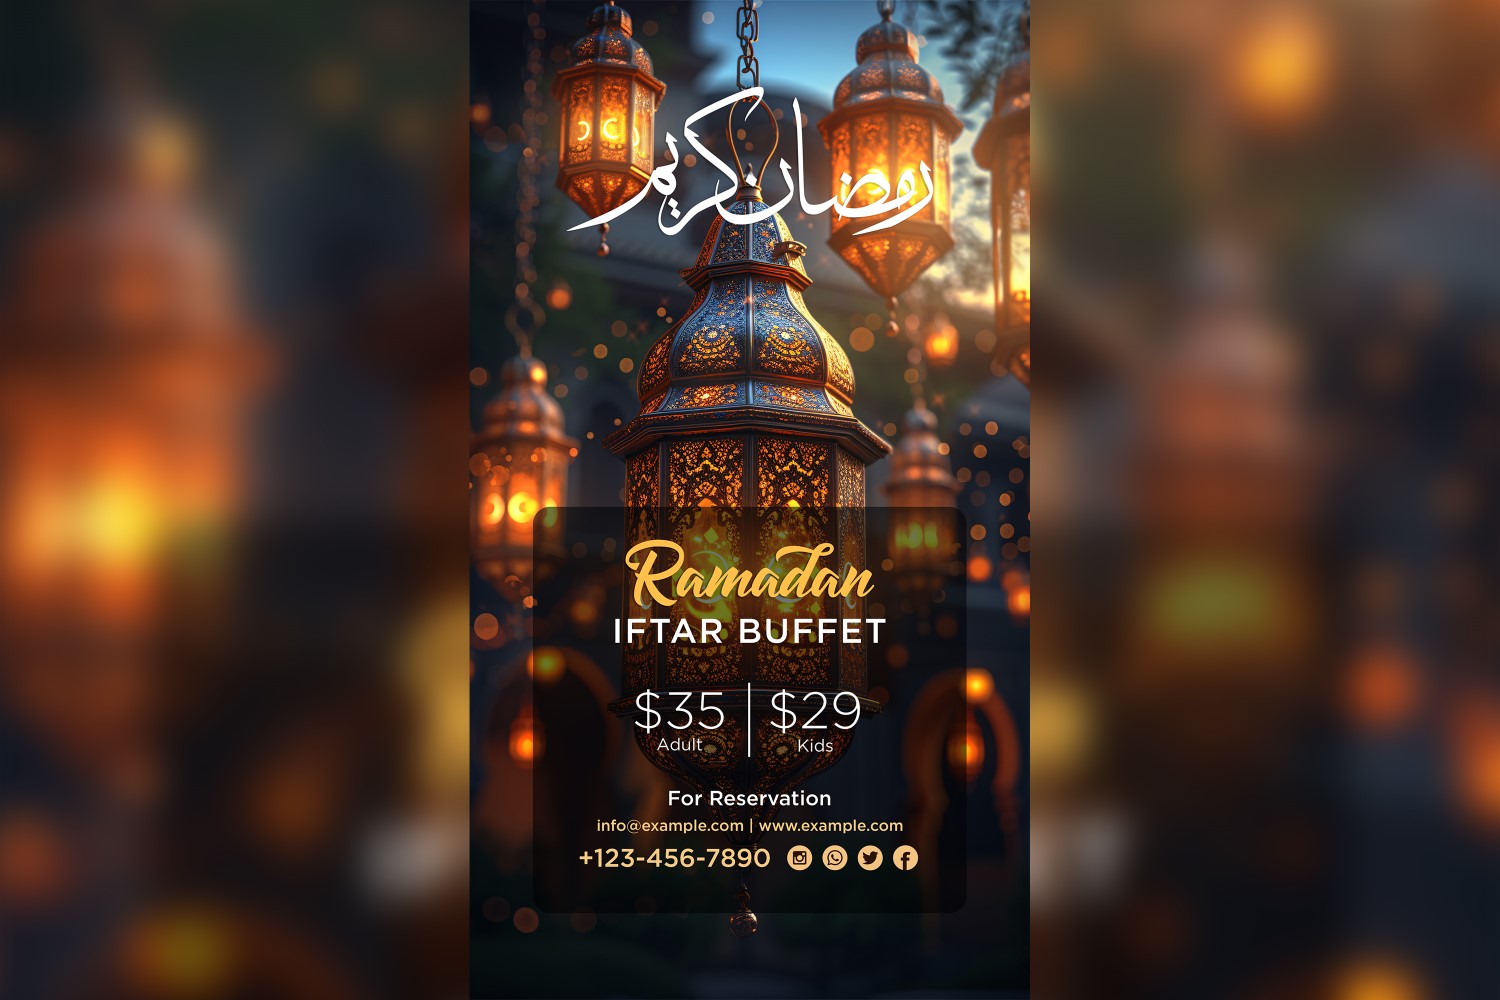 Ramadan Iftar Buffet Poster Design Template 142